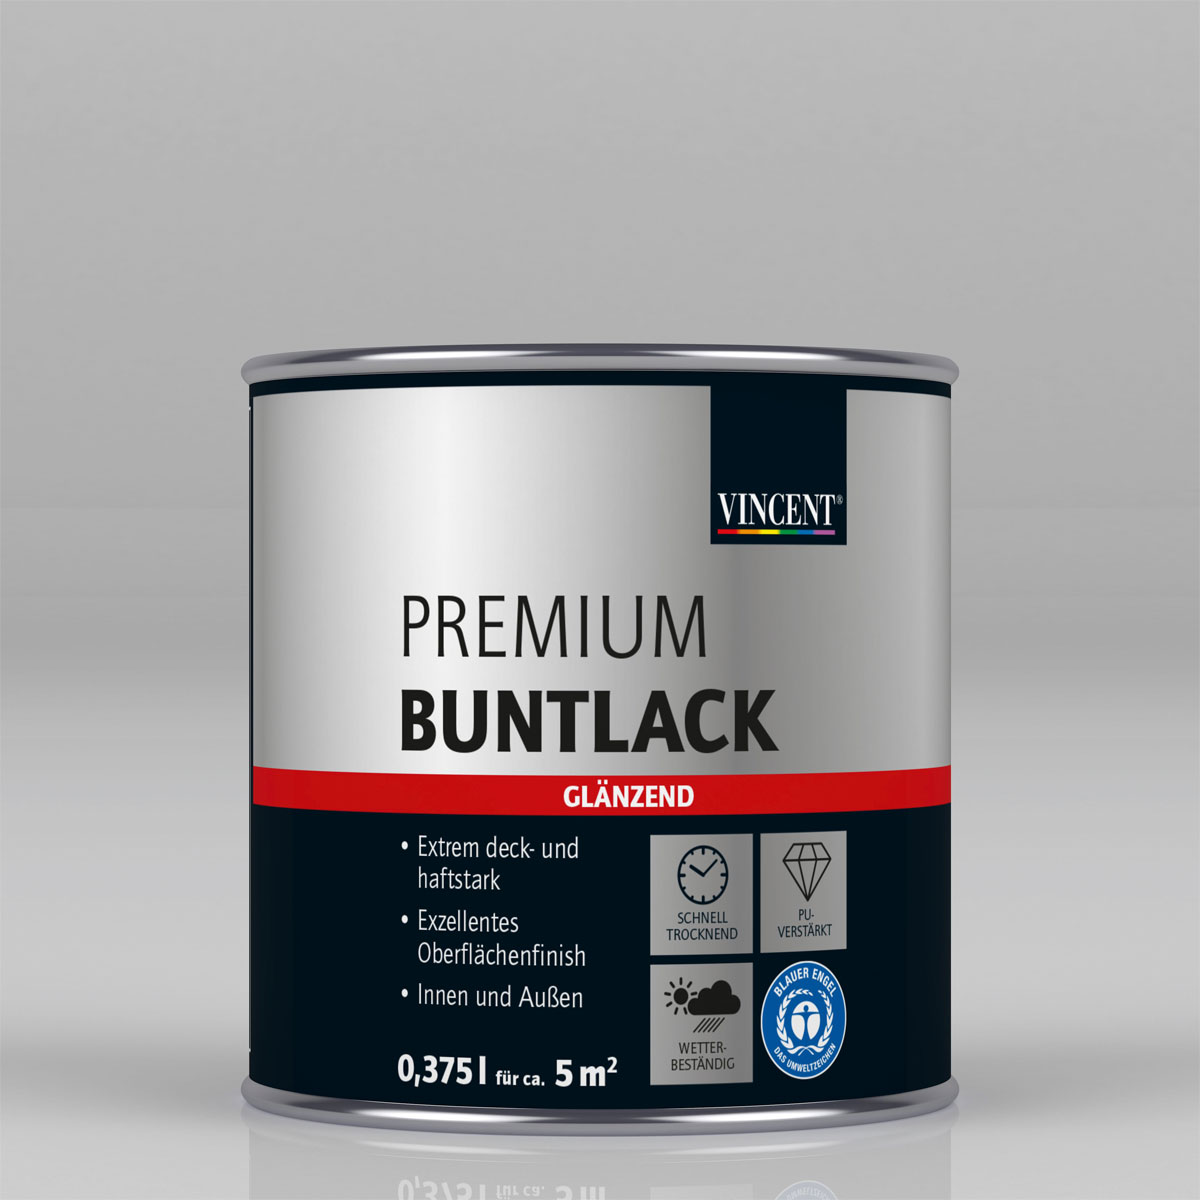 Premium Buntlack „Mandelbraun“ glänzend, 375 ml